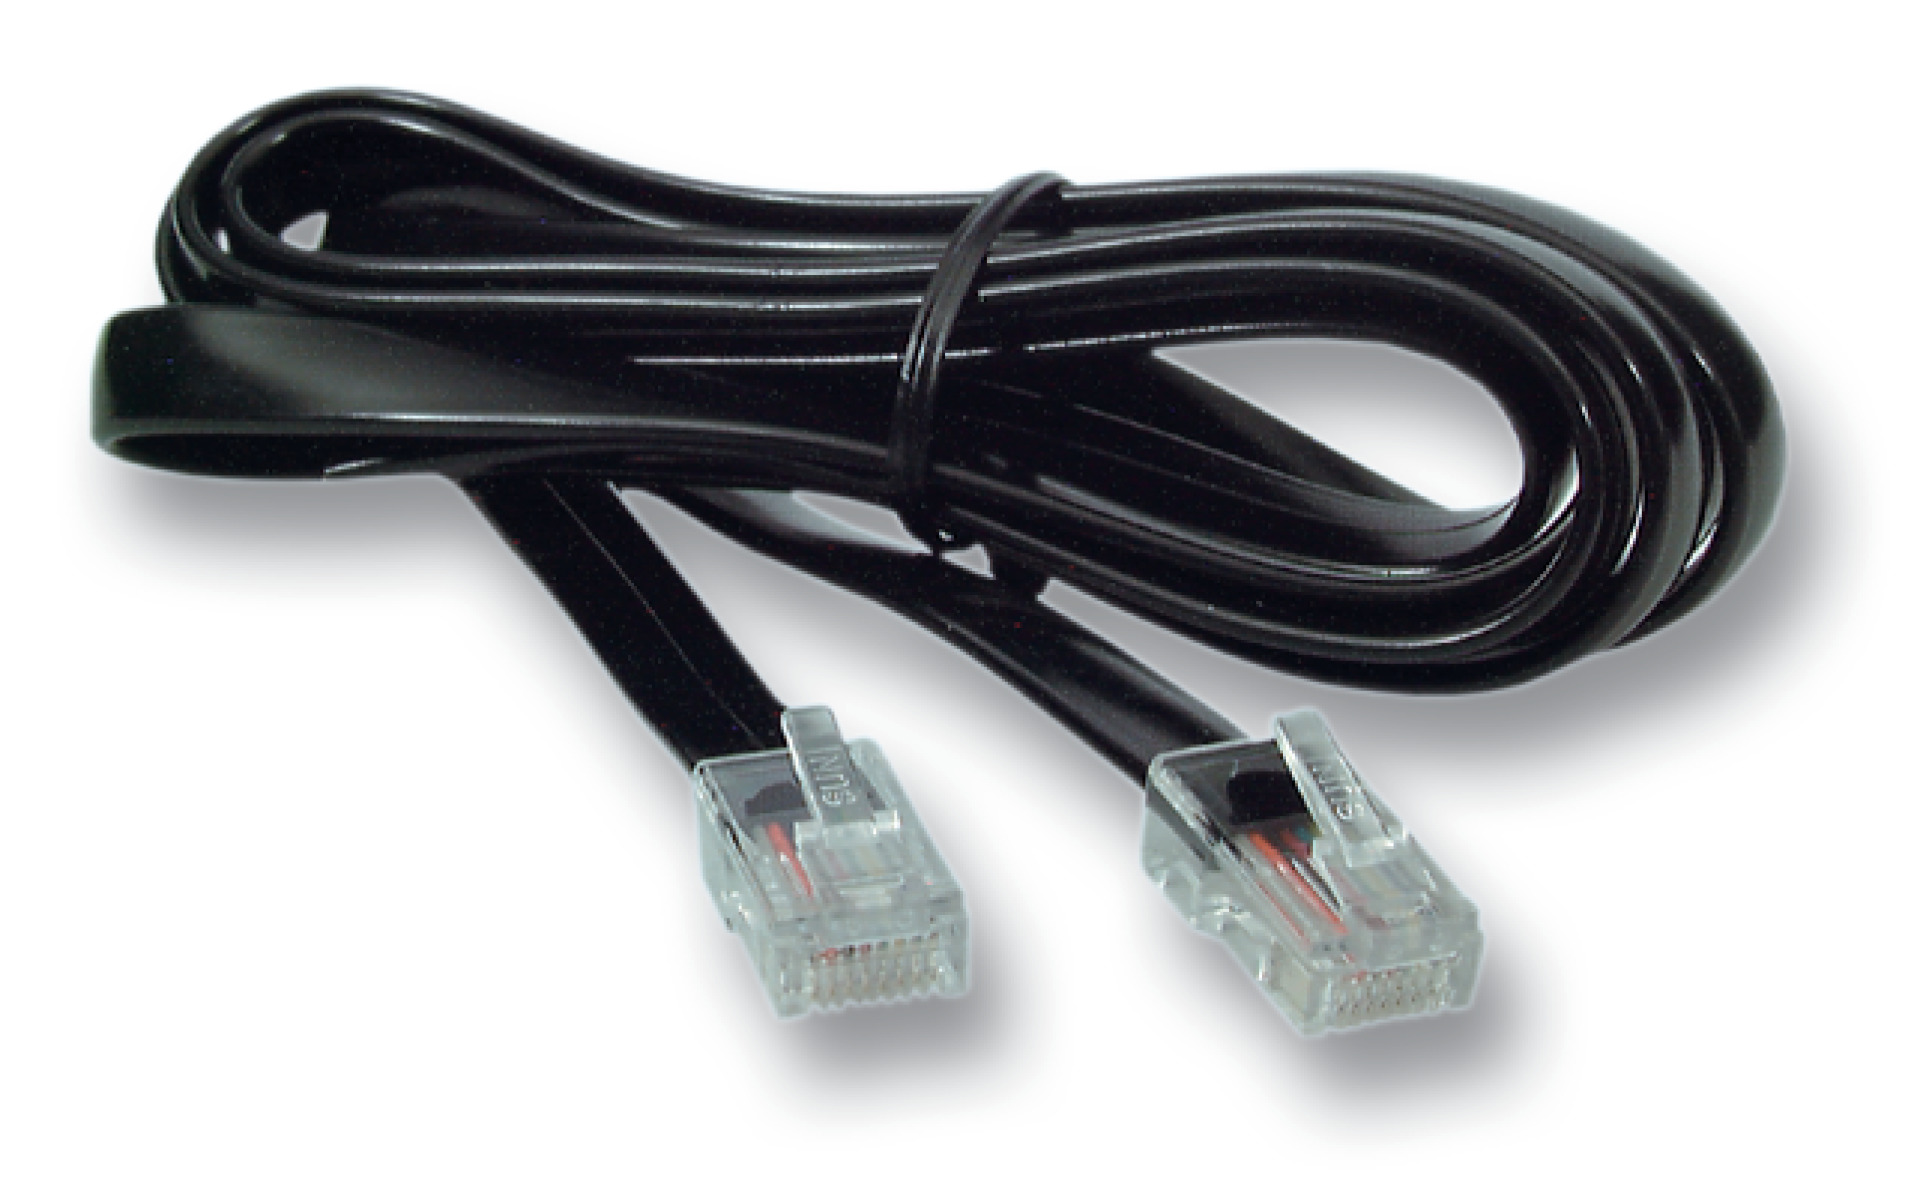 Modular cable RJ45 (8/8)/RJ45 (8/8), 1:1, flat cable, 3,0m